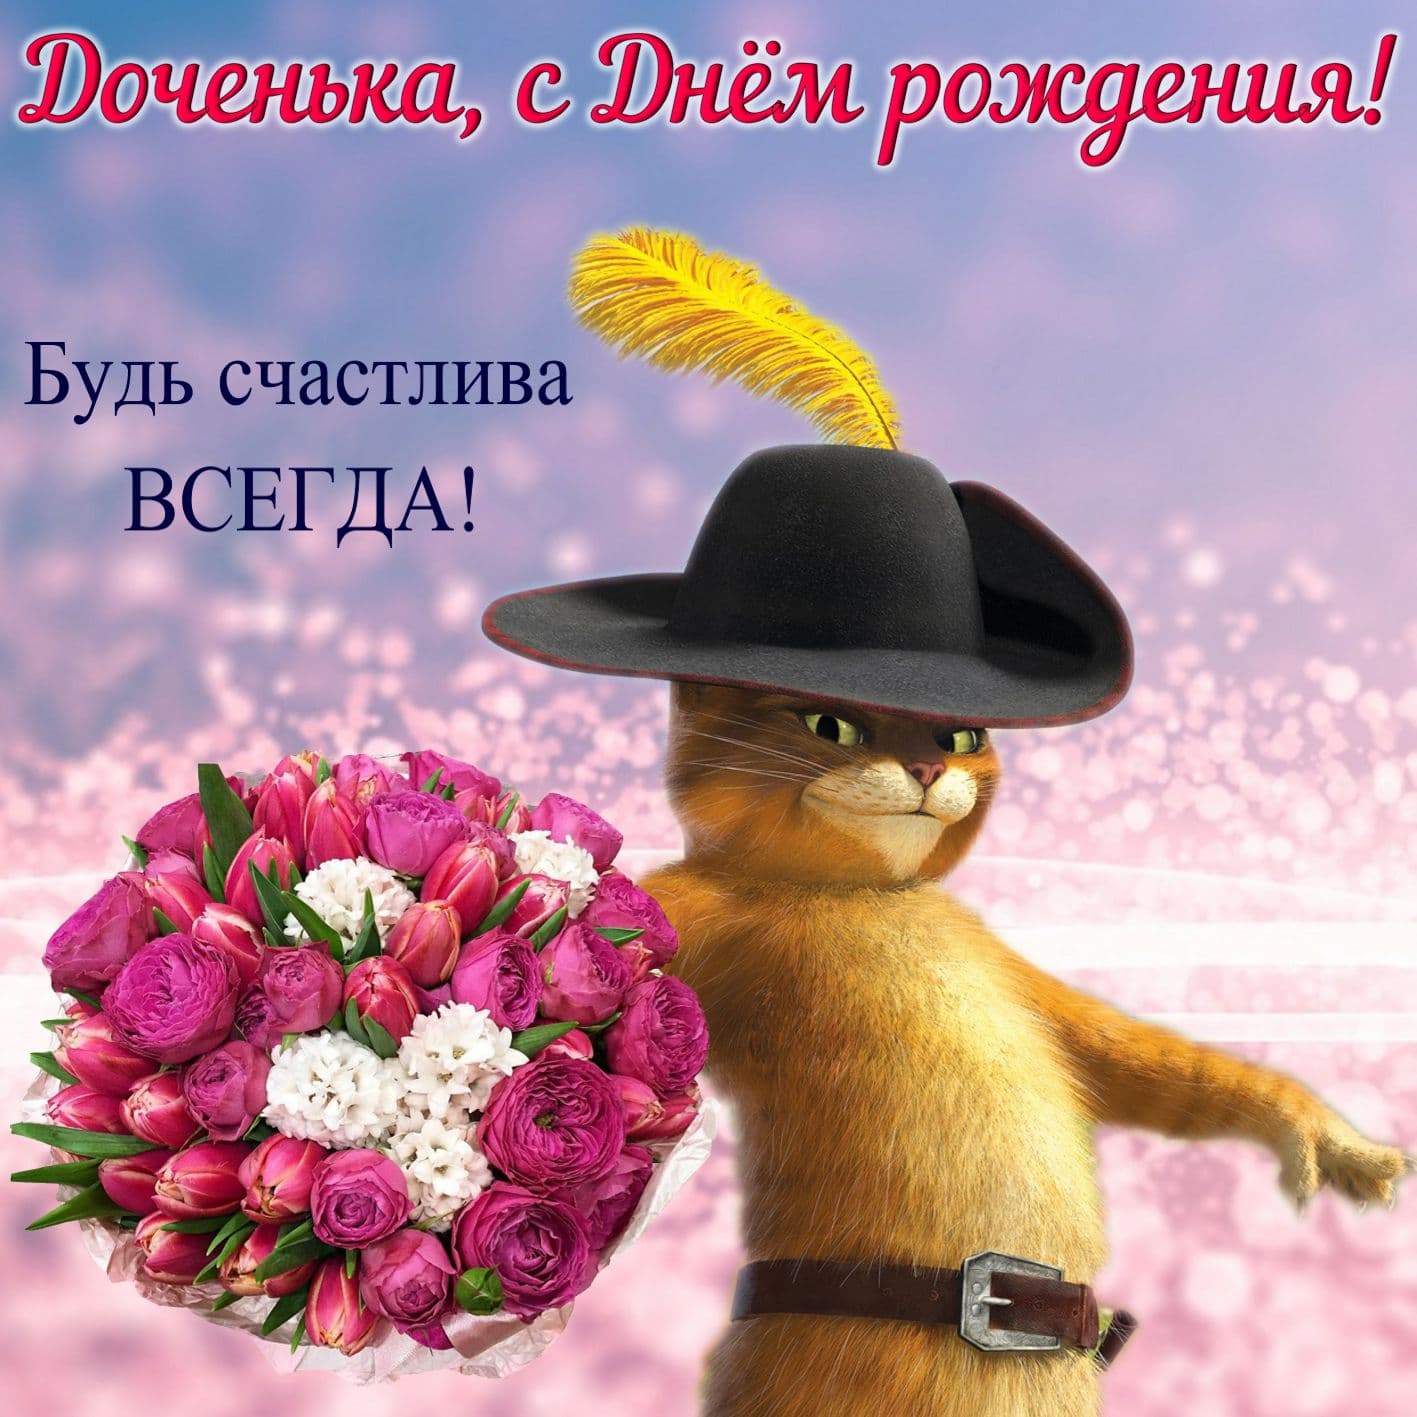 Сказочный кот с цветами для доченьки